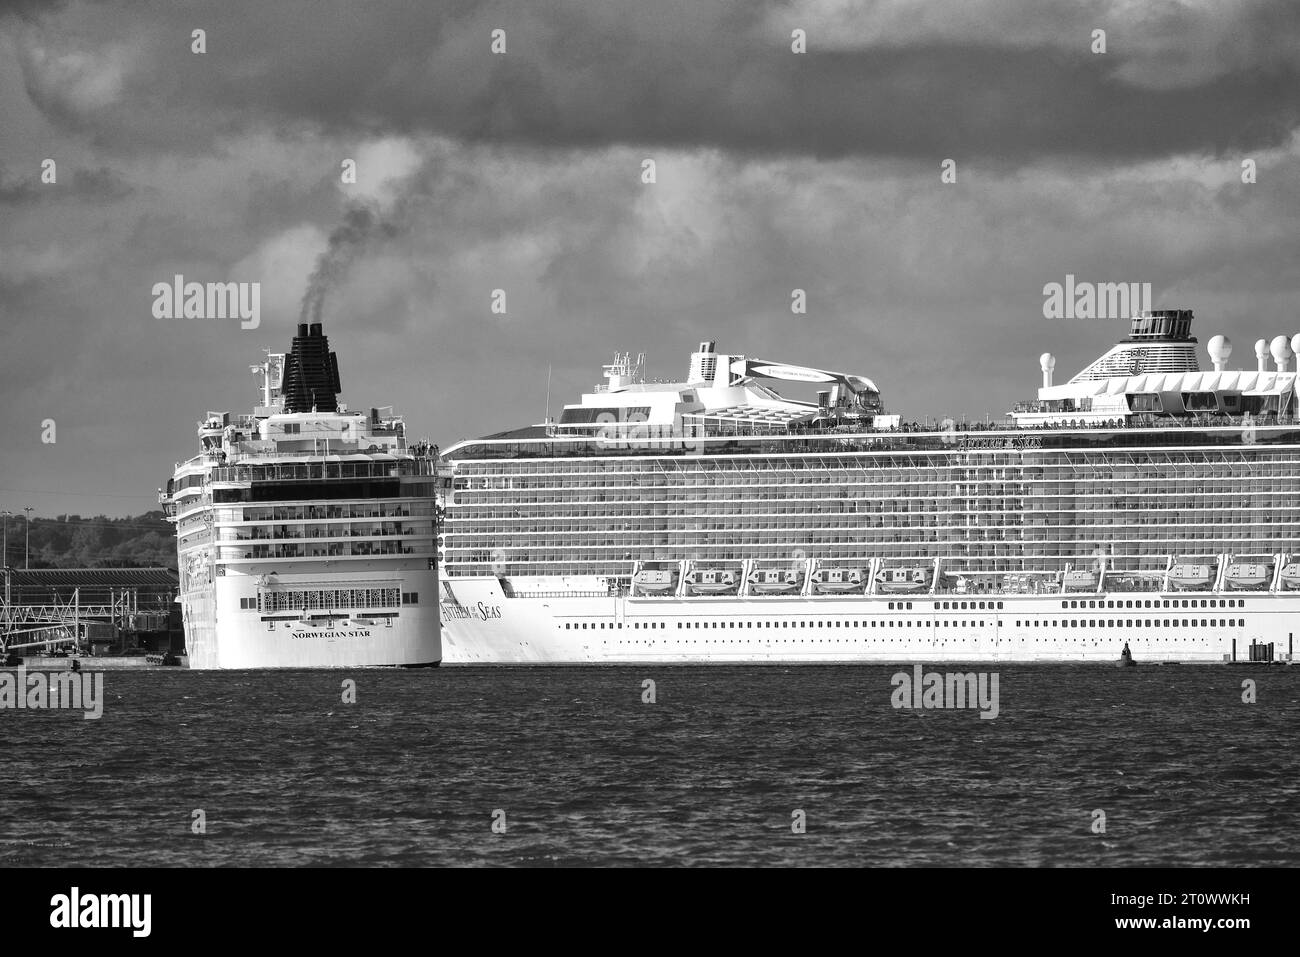 Le navire de croisière NORWEGIAN Cruise Line NORWEGIAN STAR, revient de son amarrage dans le Deep Water Channel dans le port de Southampton, au Royaume-Uni Banque D'Images